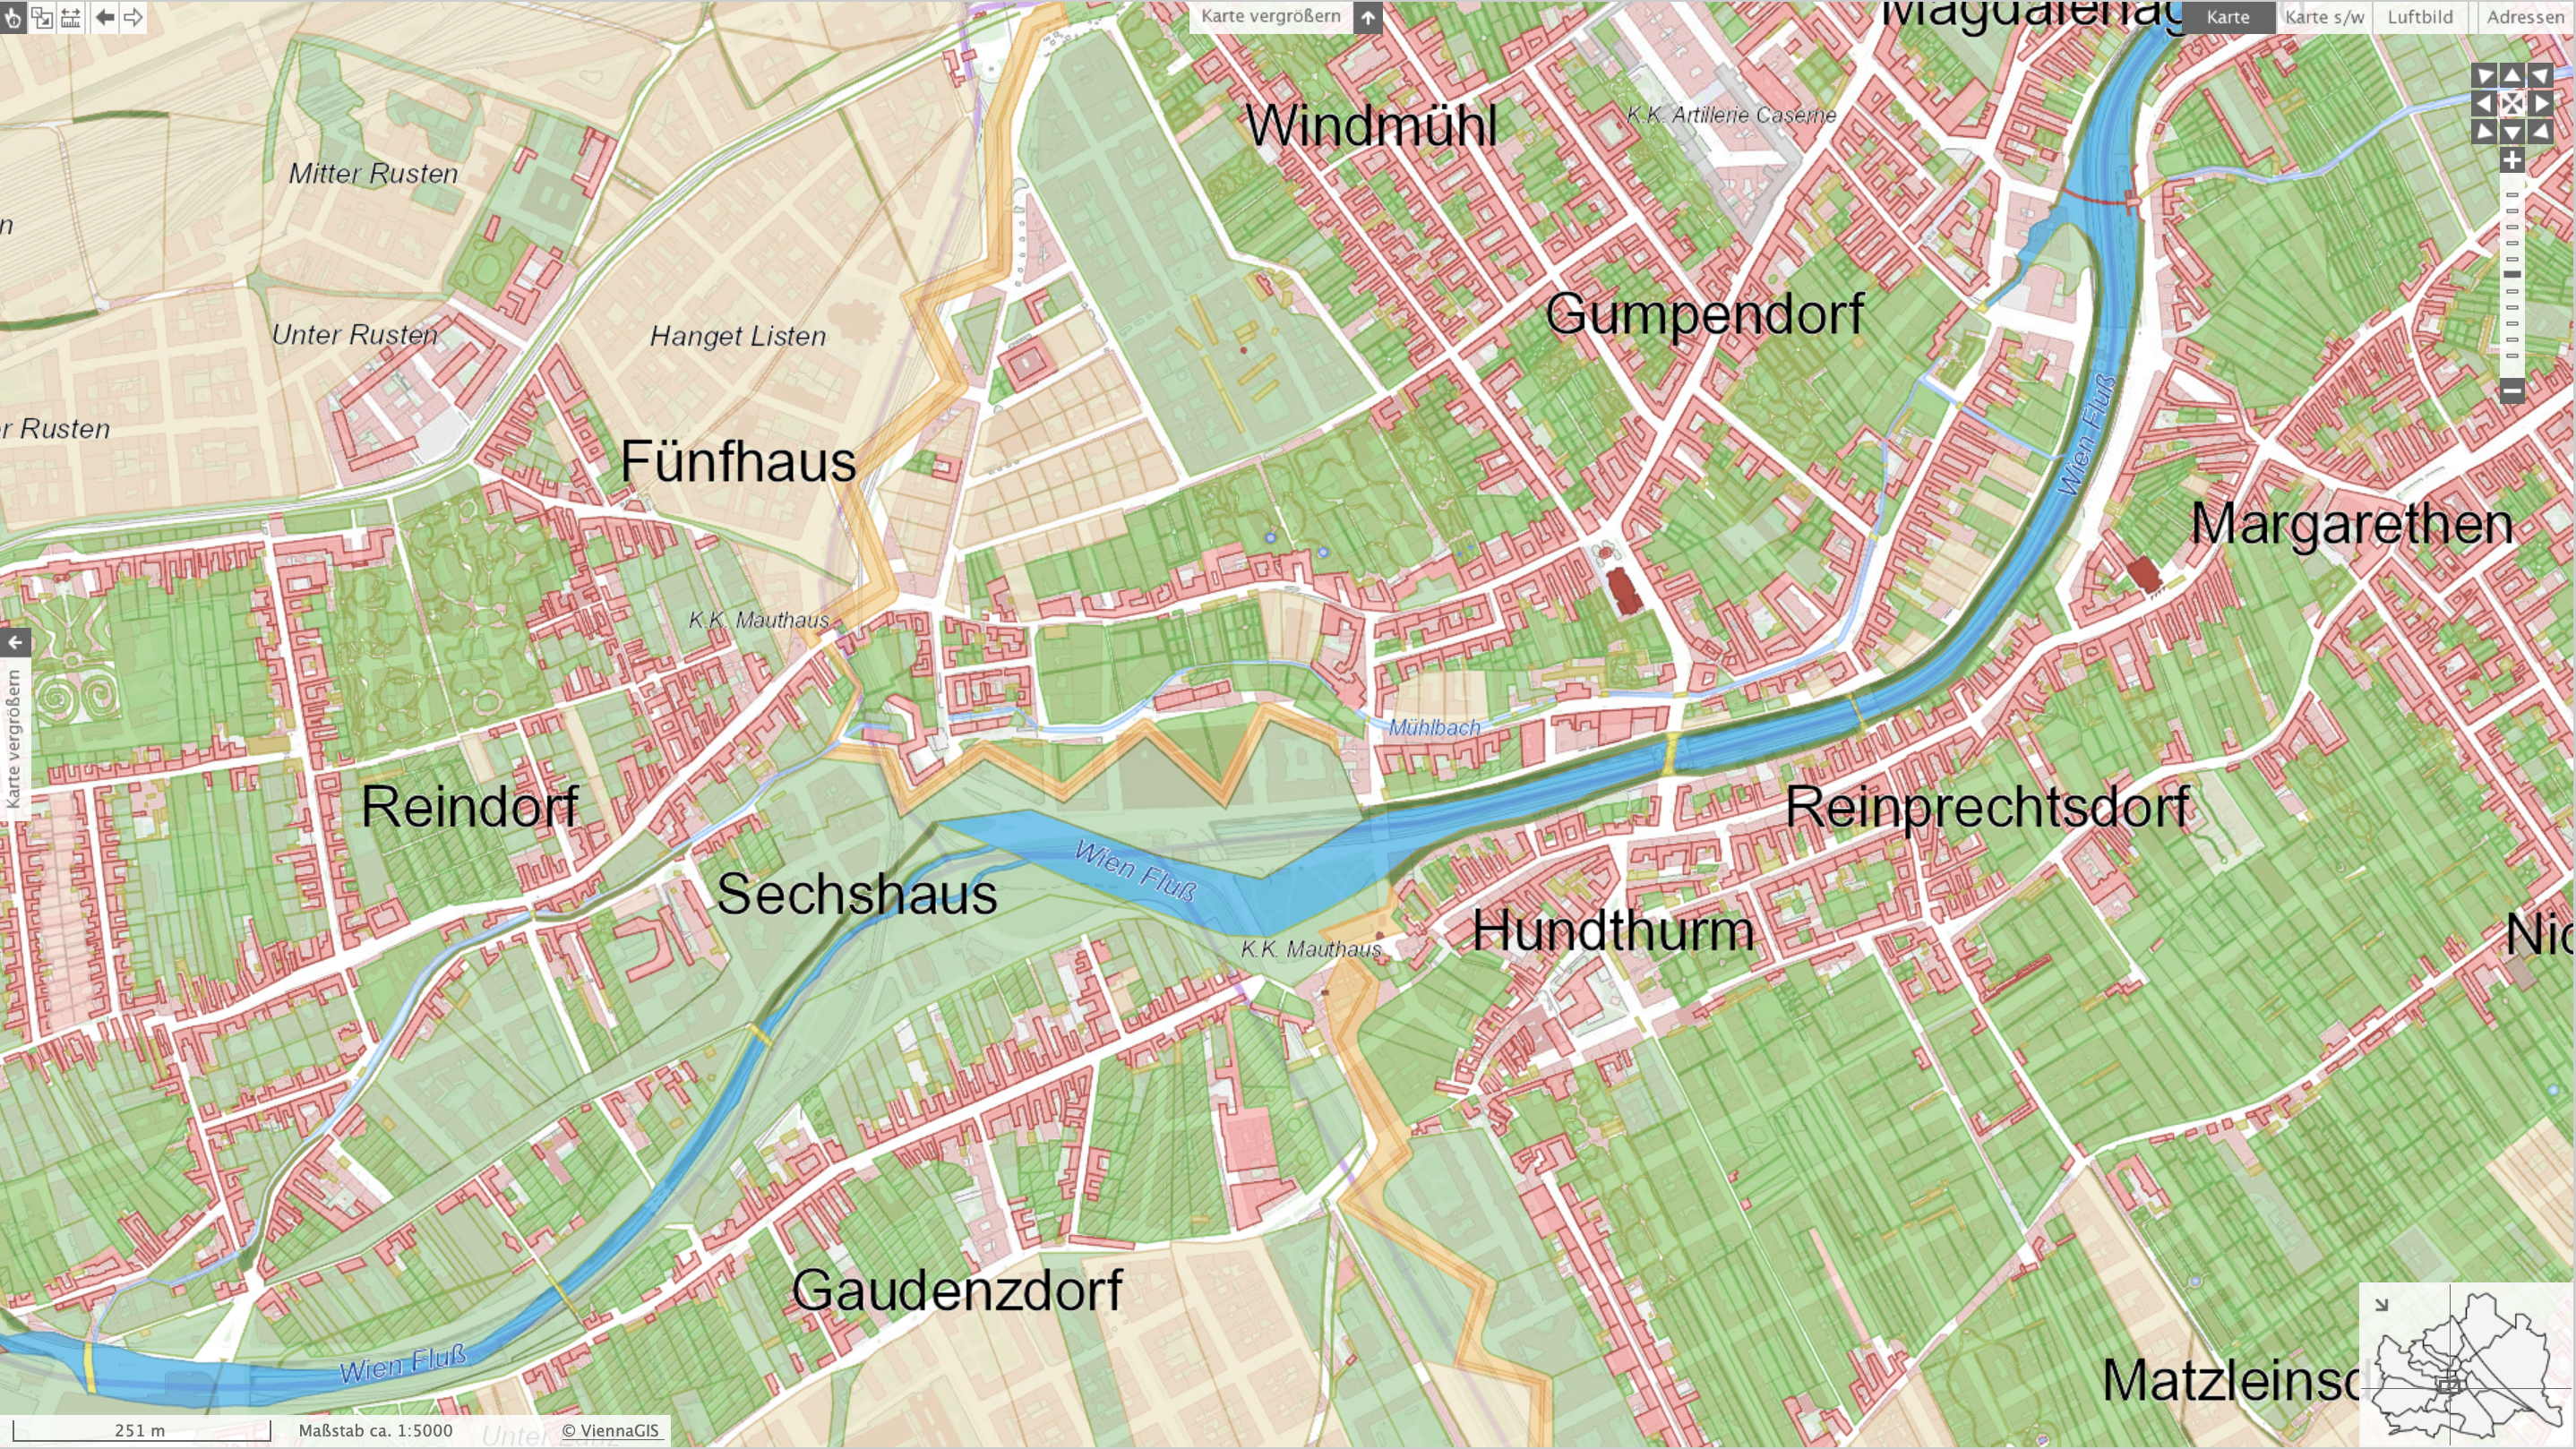 Kartenausschnitt Wienfluss